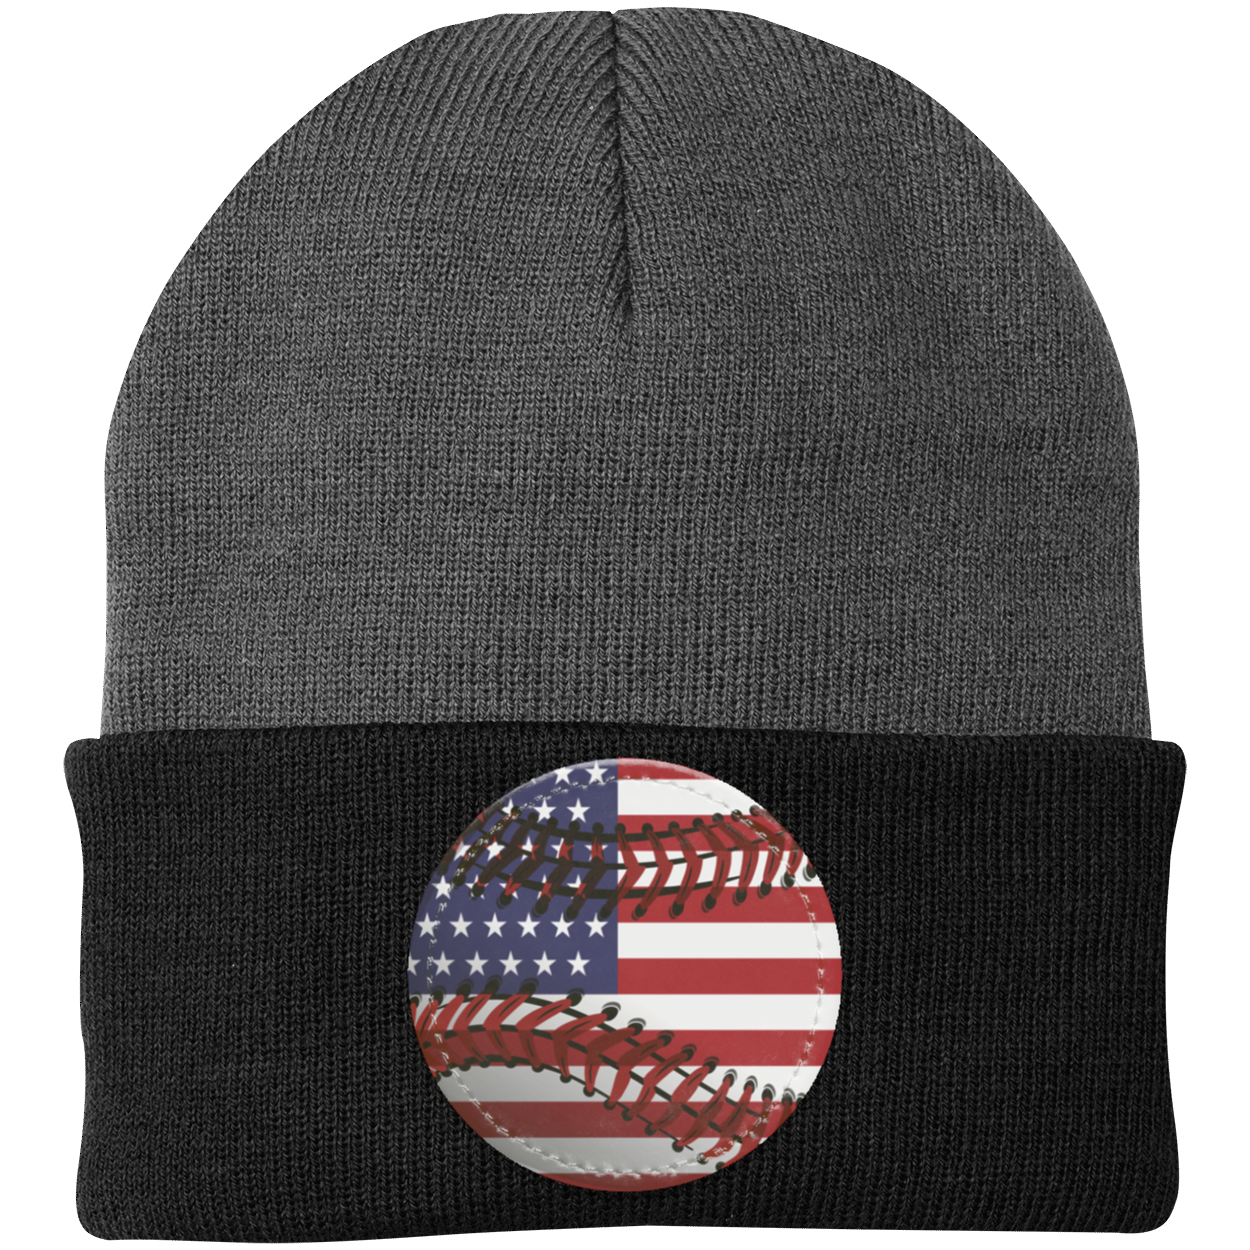 USA Baseball Knit Beanie - Patch